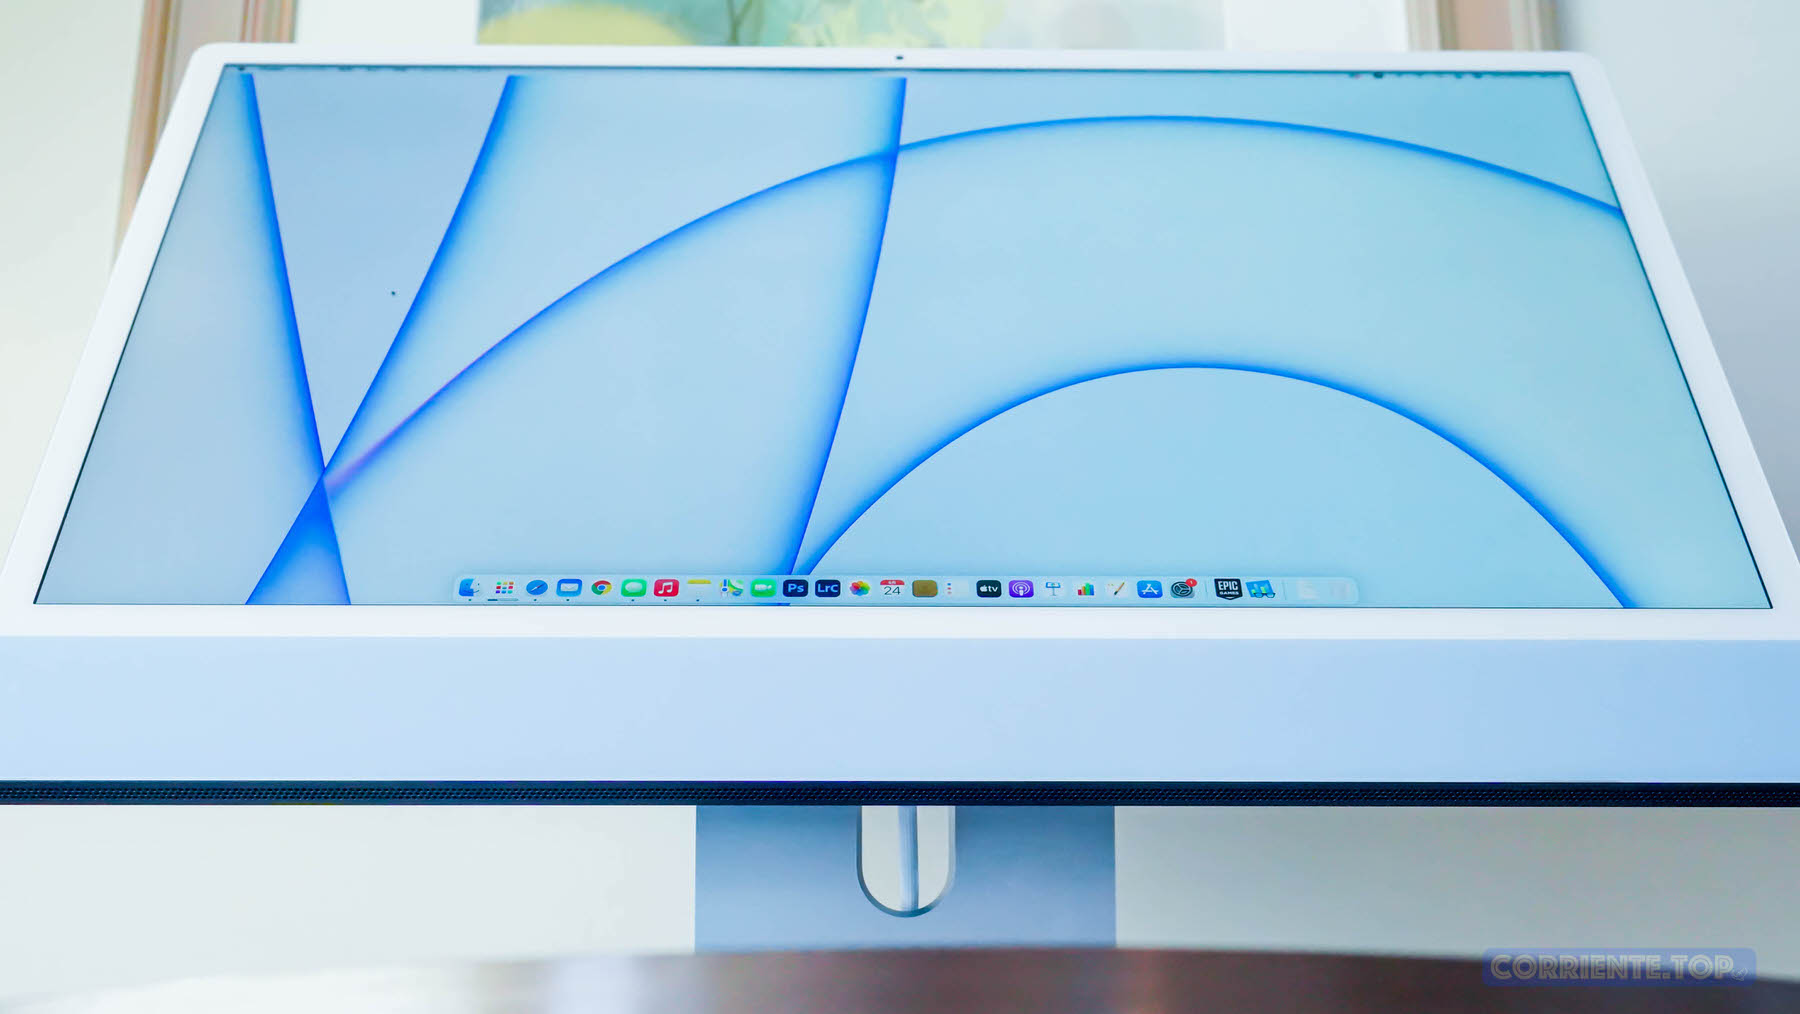 日本正規取扱商品 Apple 2021 M1 iMac 4.5K Retina 24インチ ブルー デスクトップ型PC